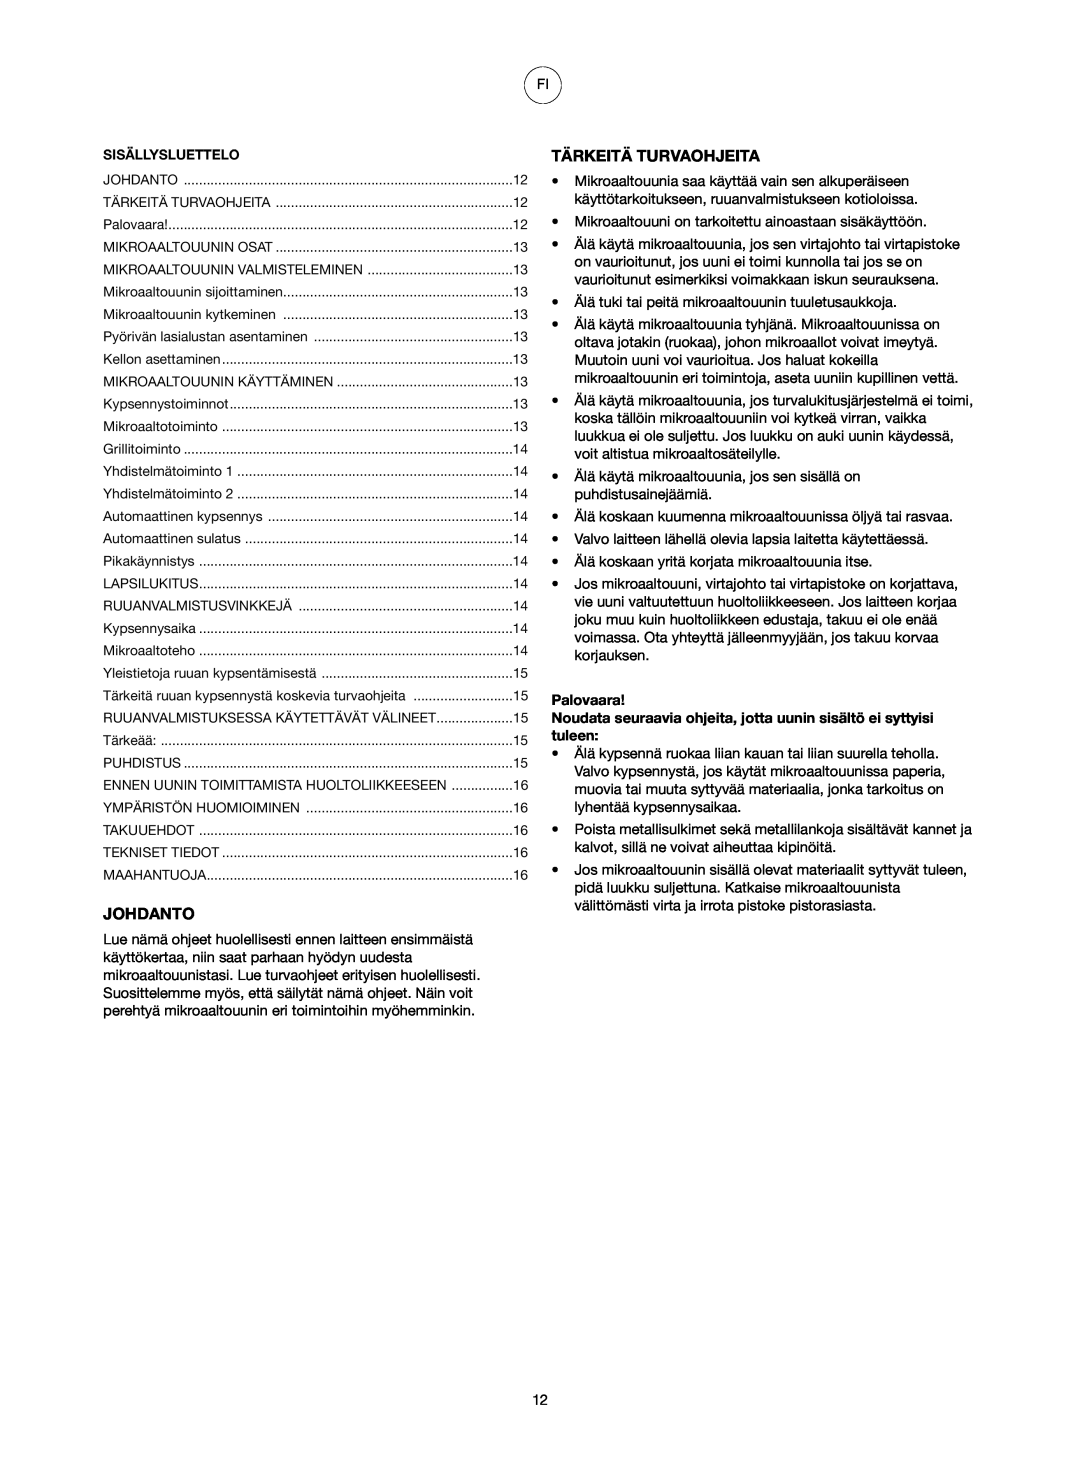 Melissa 753-087 manual Johdanto, Tärkeitä Turvaohjeita, Palovaara 